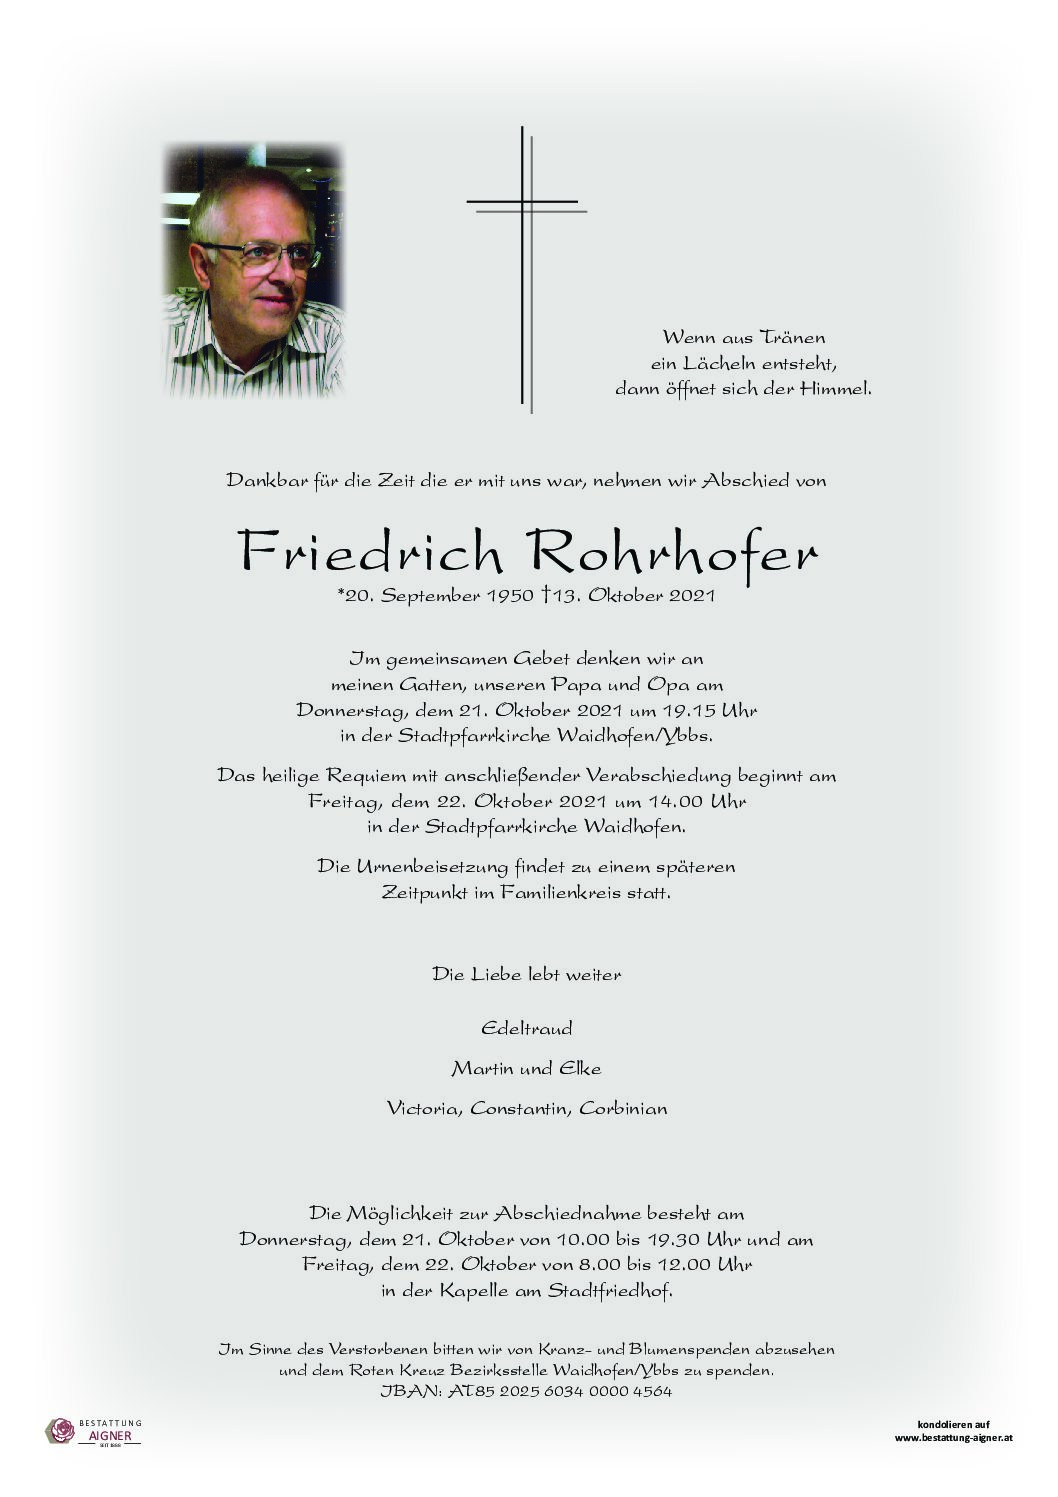 Friedrich Rohrhofer